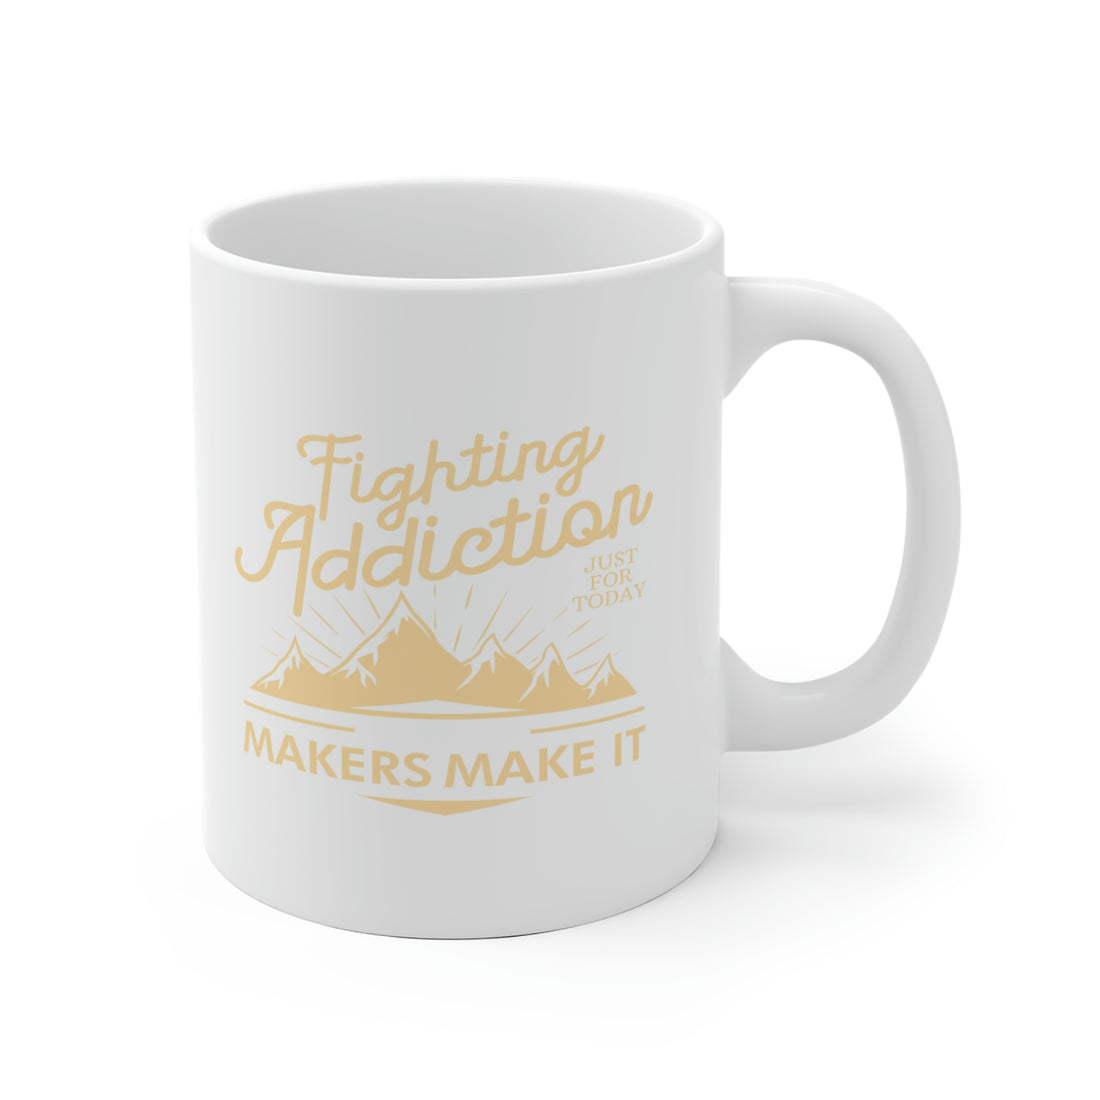 Fighting Addiction - White Ceramic Mug 2 sizes Available